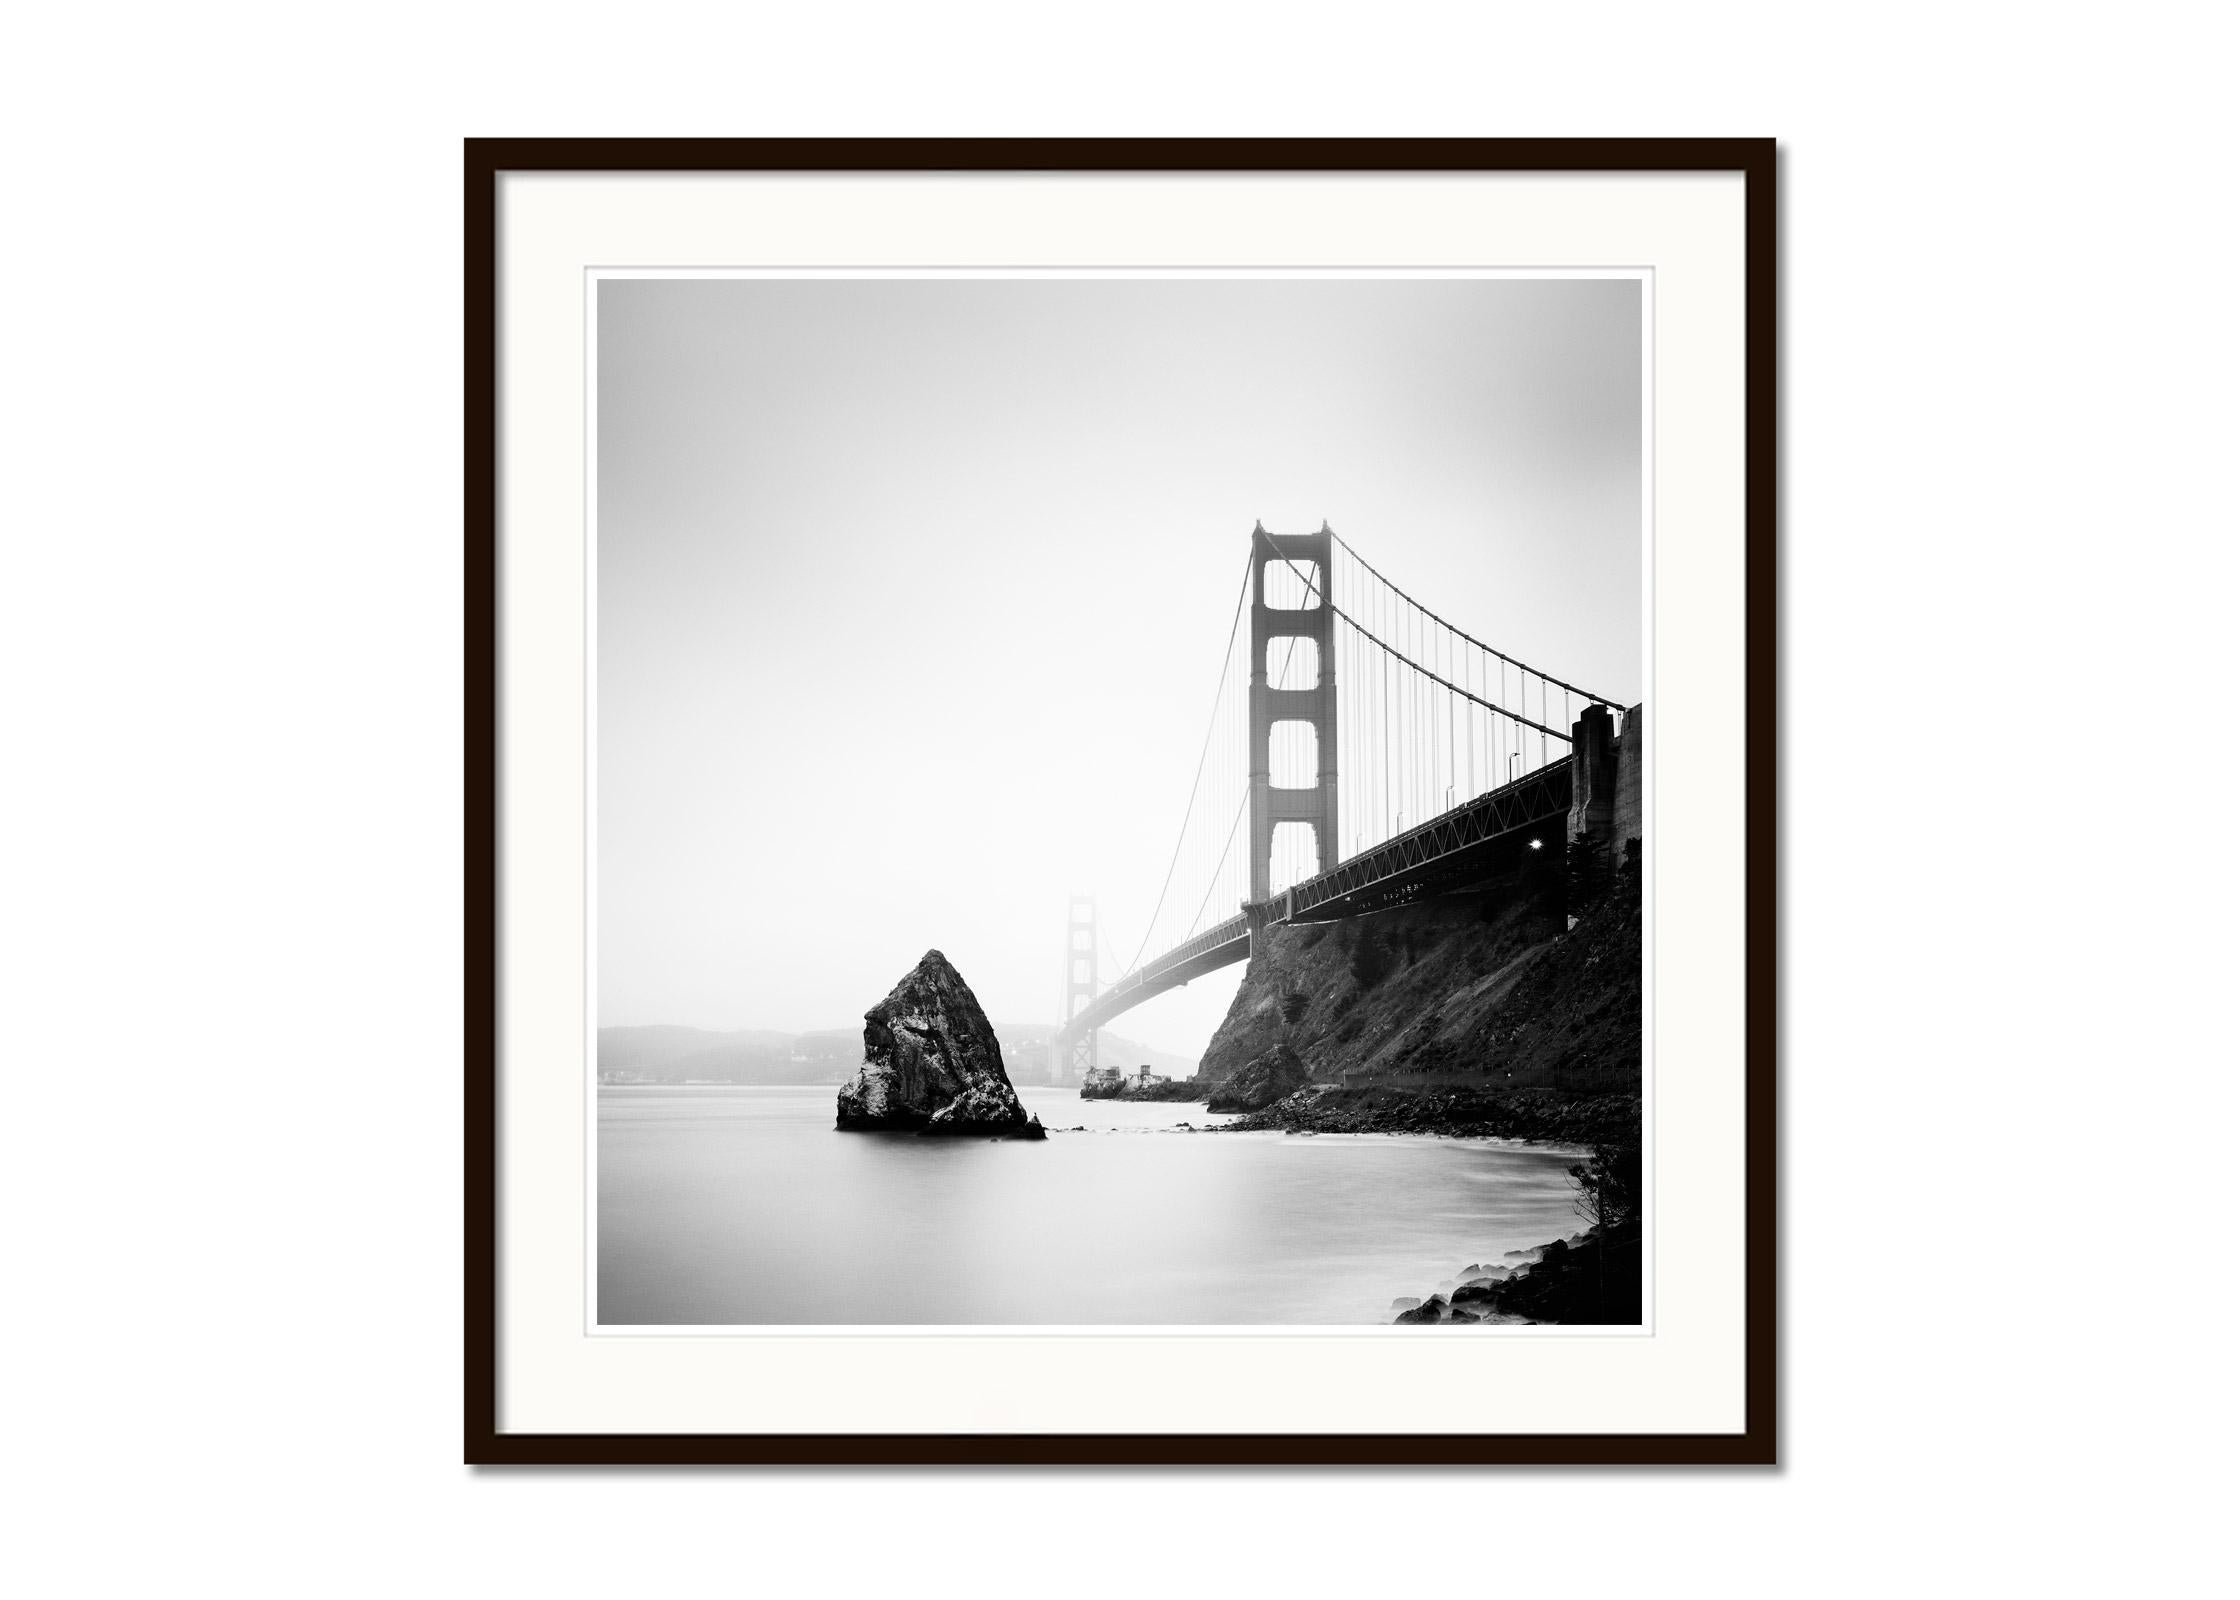 Golden Gate Bridge, fort point rock, San Francisco, b&w Landschaftsfotografie (Grau), Black and White Photograph, von Gerald Berghammer